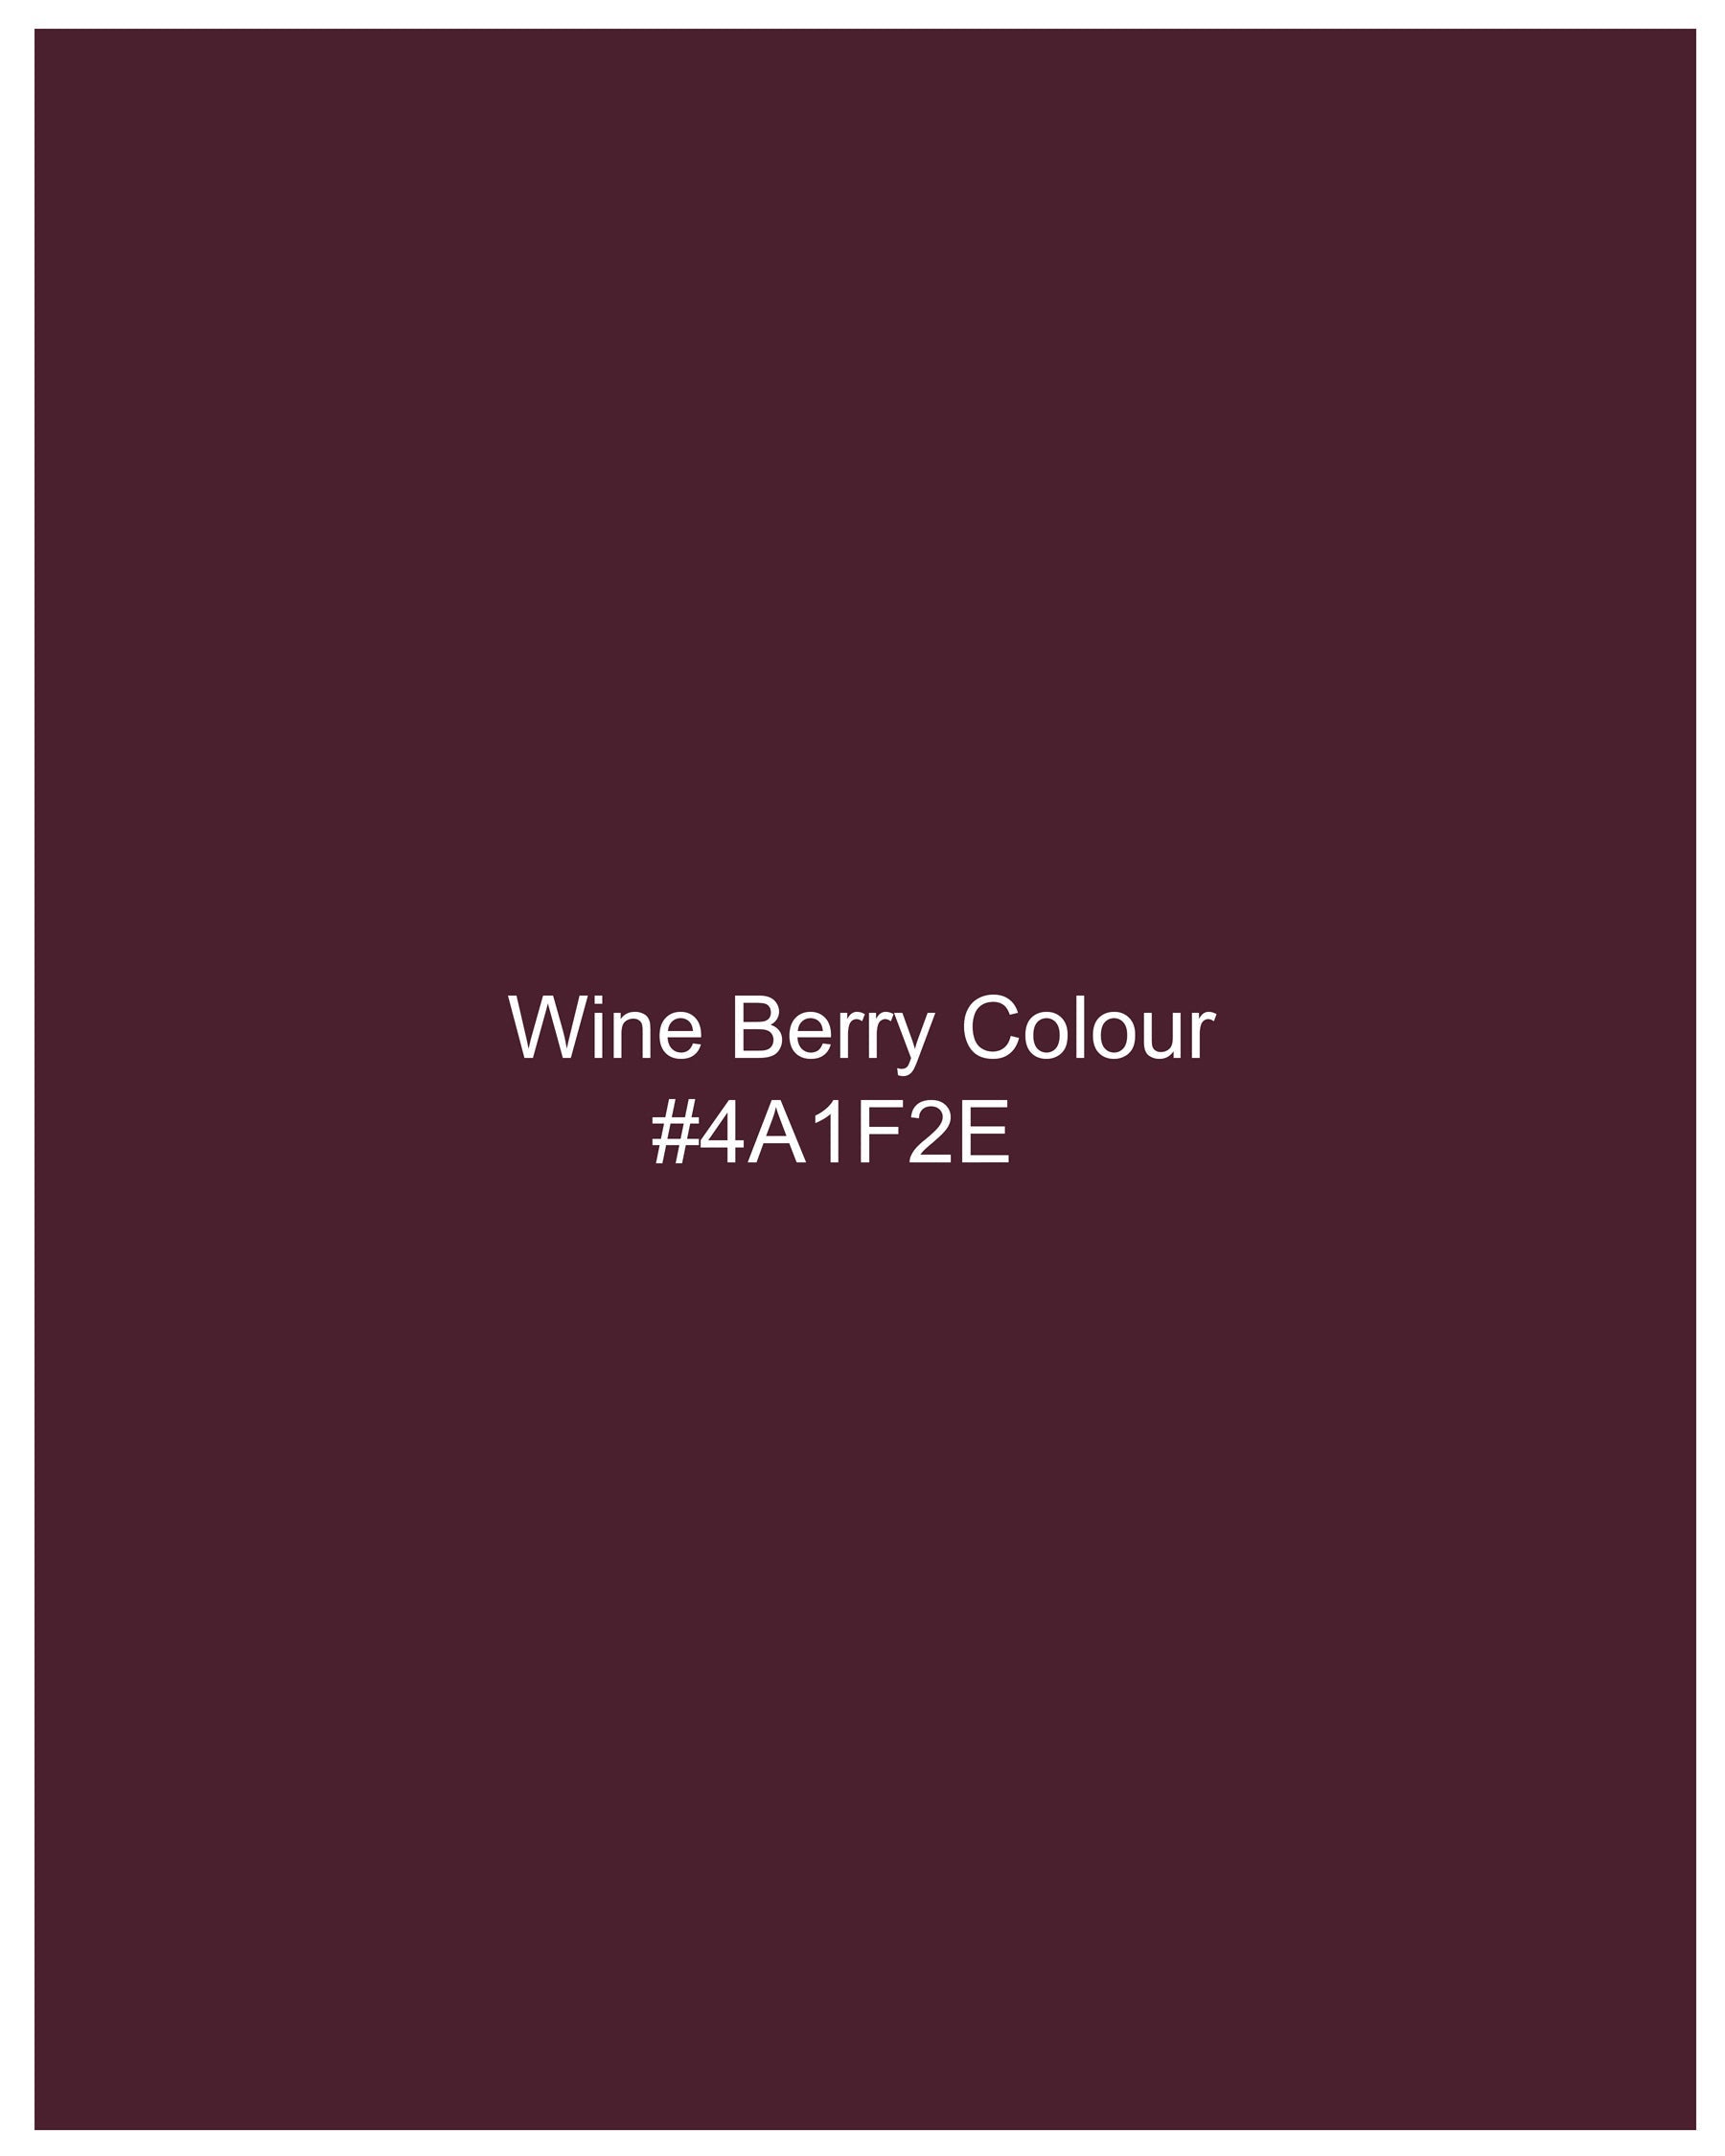 Wine Berry Wool Rich Waistcoat V2130-36, V2130-38, V2130-40, V2130-42, V2130-44, V2130-46, V2130-48, V2130-50, V2130-52, V2130-54, V2130-56, V2130-58, V2130-60